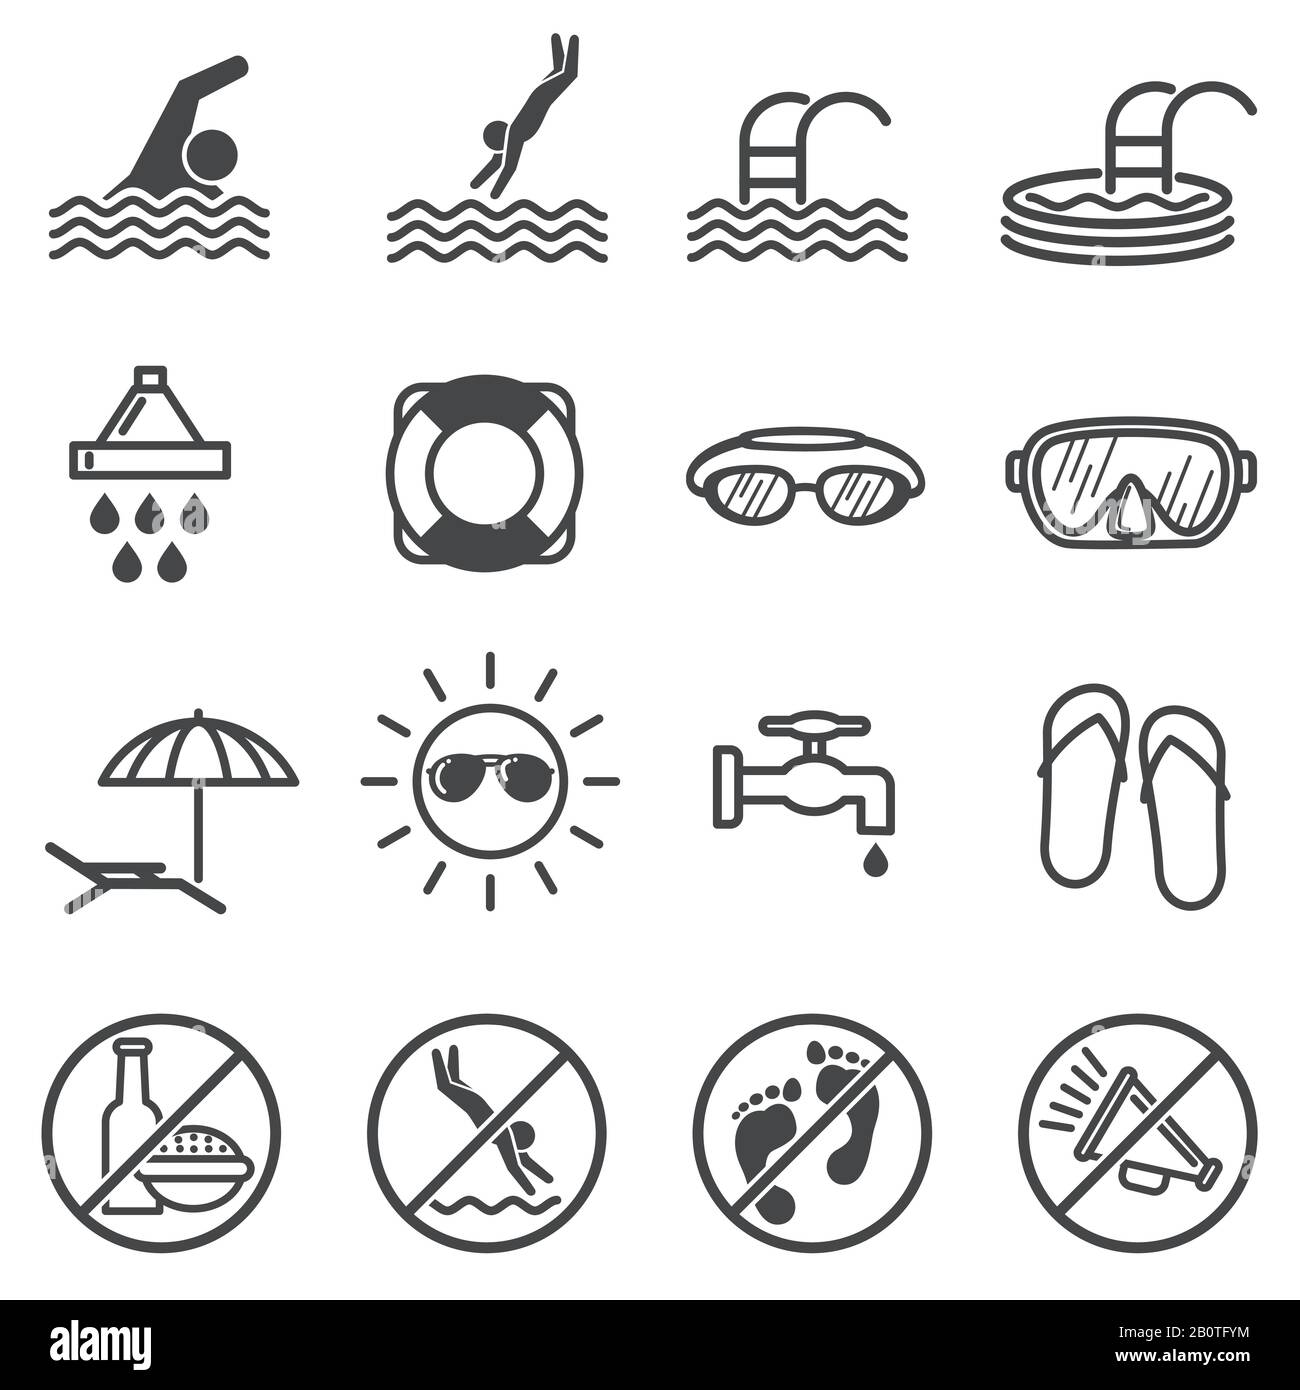 Warnschilder für öffentliche Pools. Symbole für Schwimmregeln. Öffentliche Regel im Wasserbecken, Veranschaulichung der Einschränkung und im Schwimmbad verboten Stock Vektor